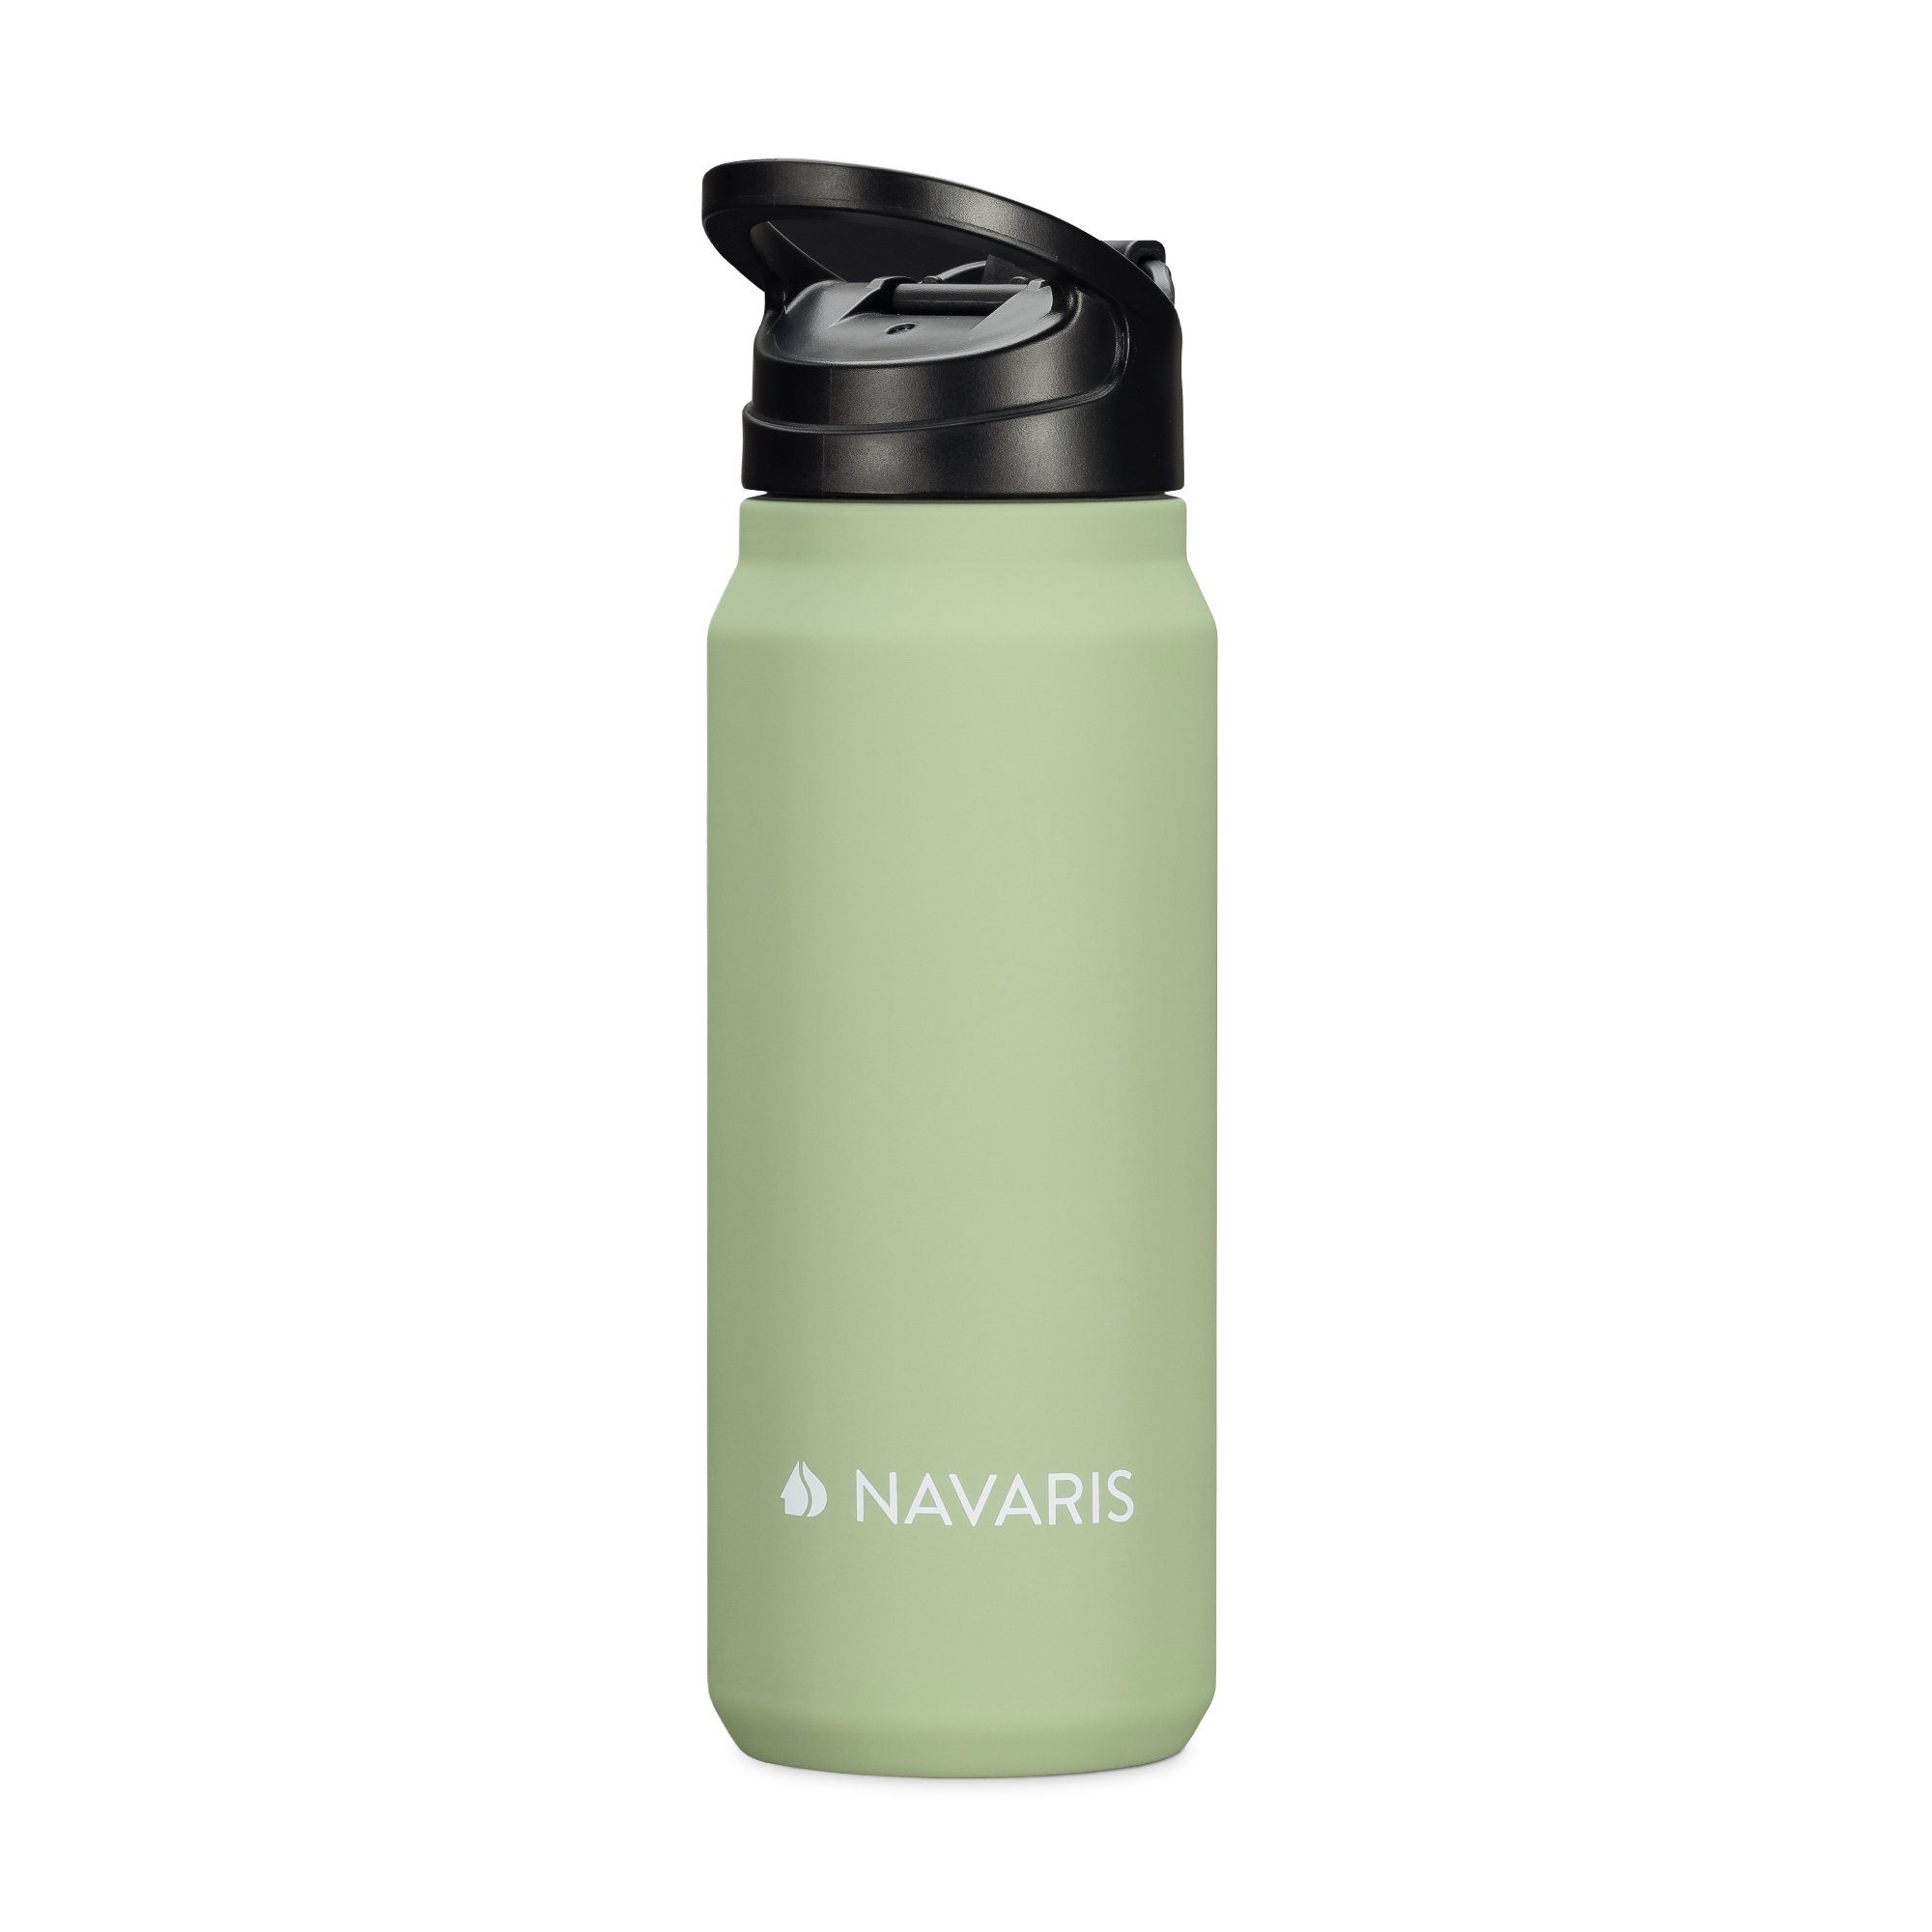 doppelwandig und Kunststoff Navaris 700ml Edelstahl Trinkflasche - Trinkflasche aus